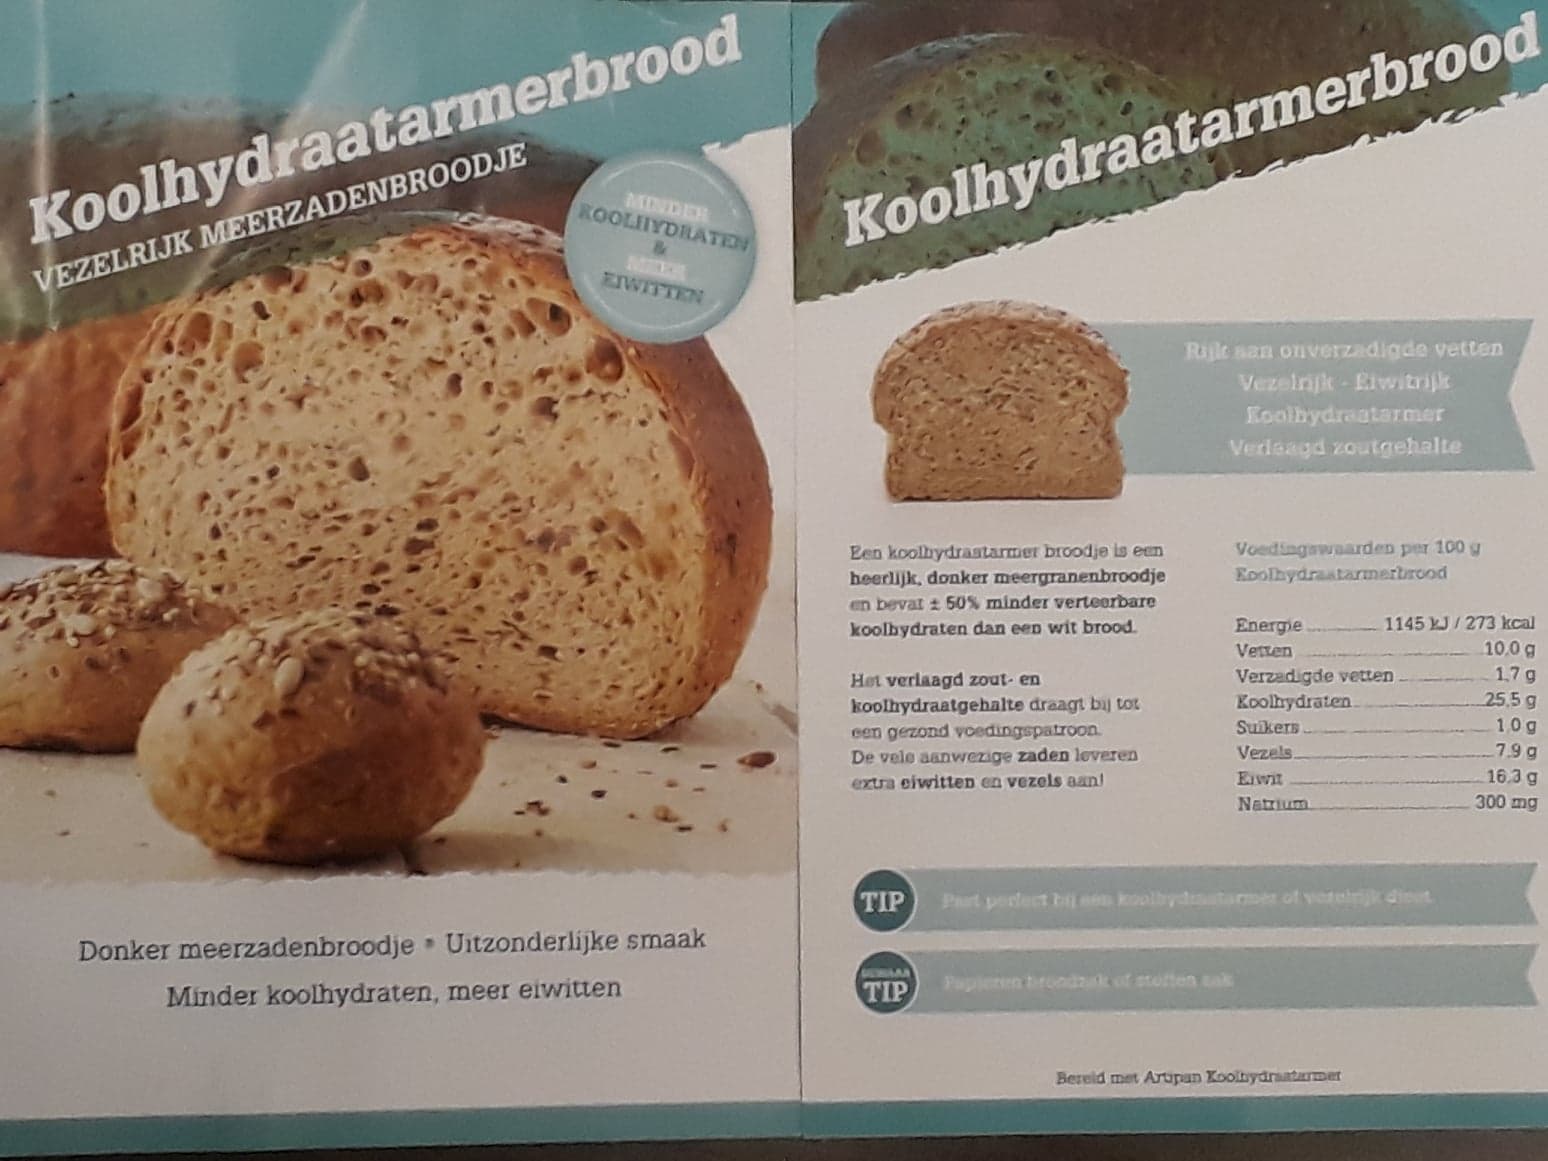 Koolhydraatarmer brood